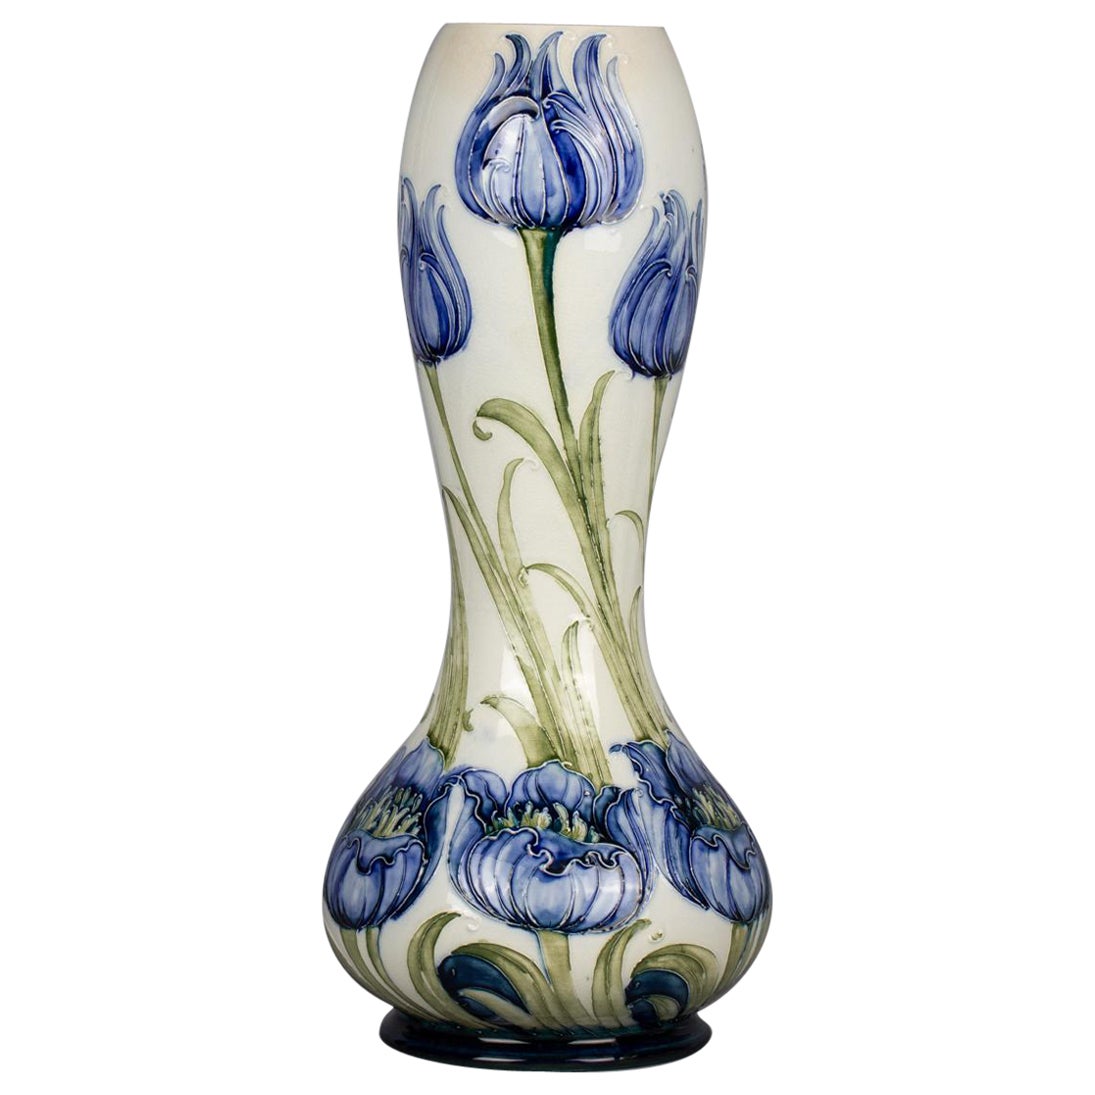 Moorcroft Florian Ware Vase, circa 1900